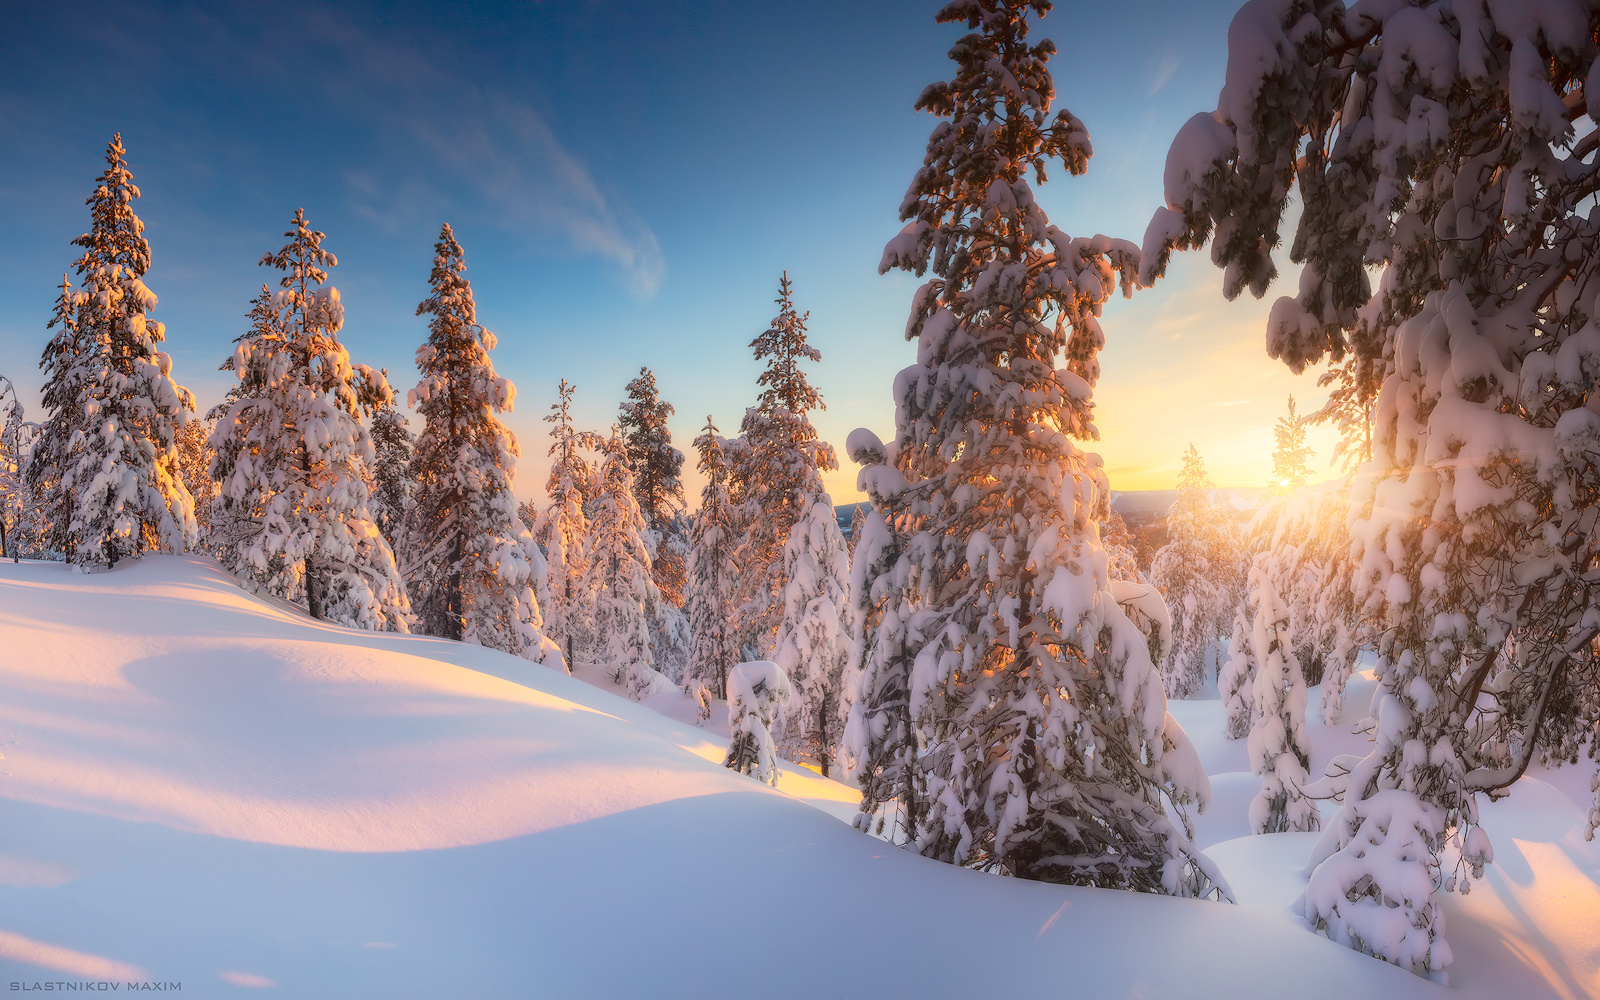 Да будет снег! финляндия лапландия снег сугробы лес закат луч солнце деревья свет пурга дерево finland explore outdoor forest trees landscape house